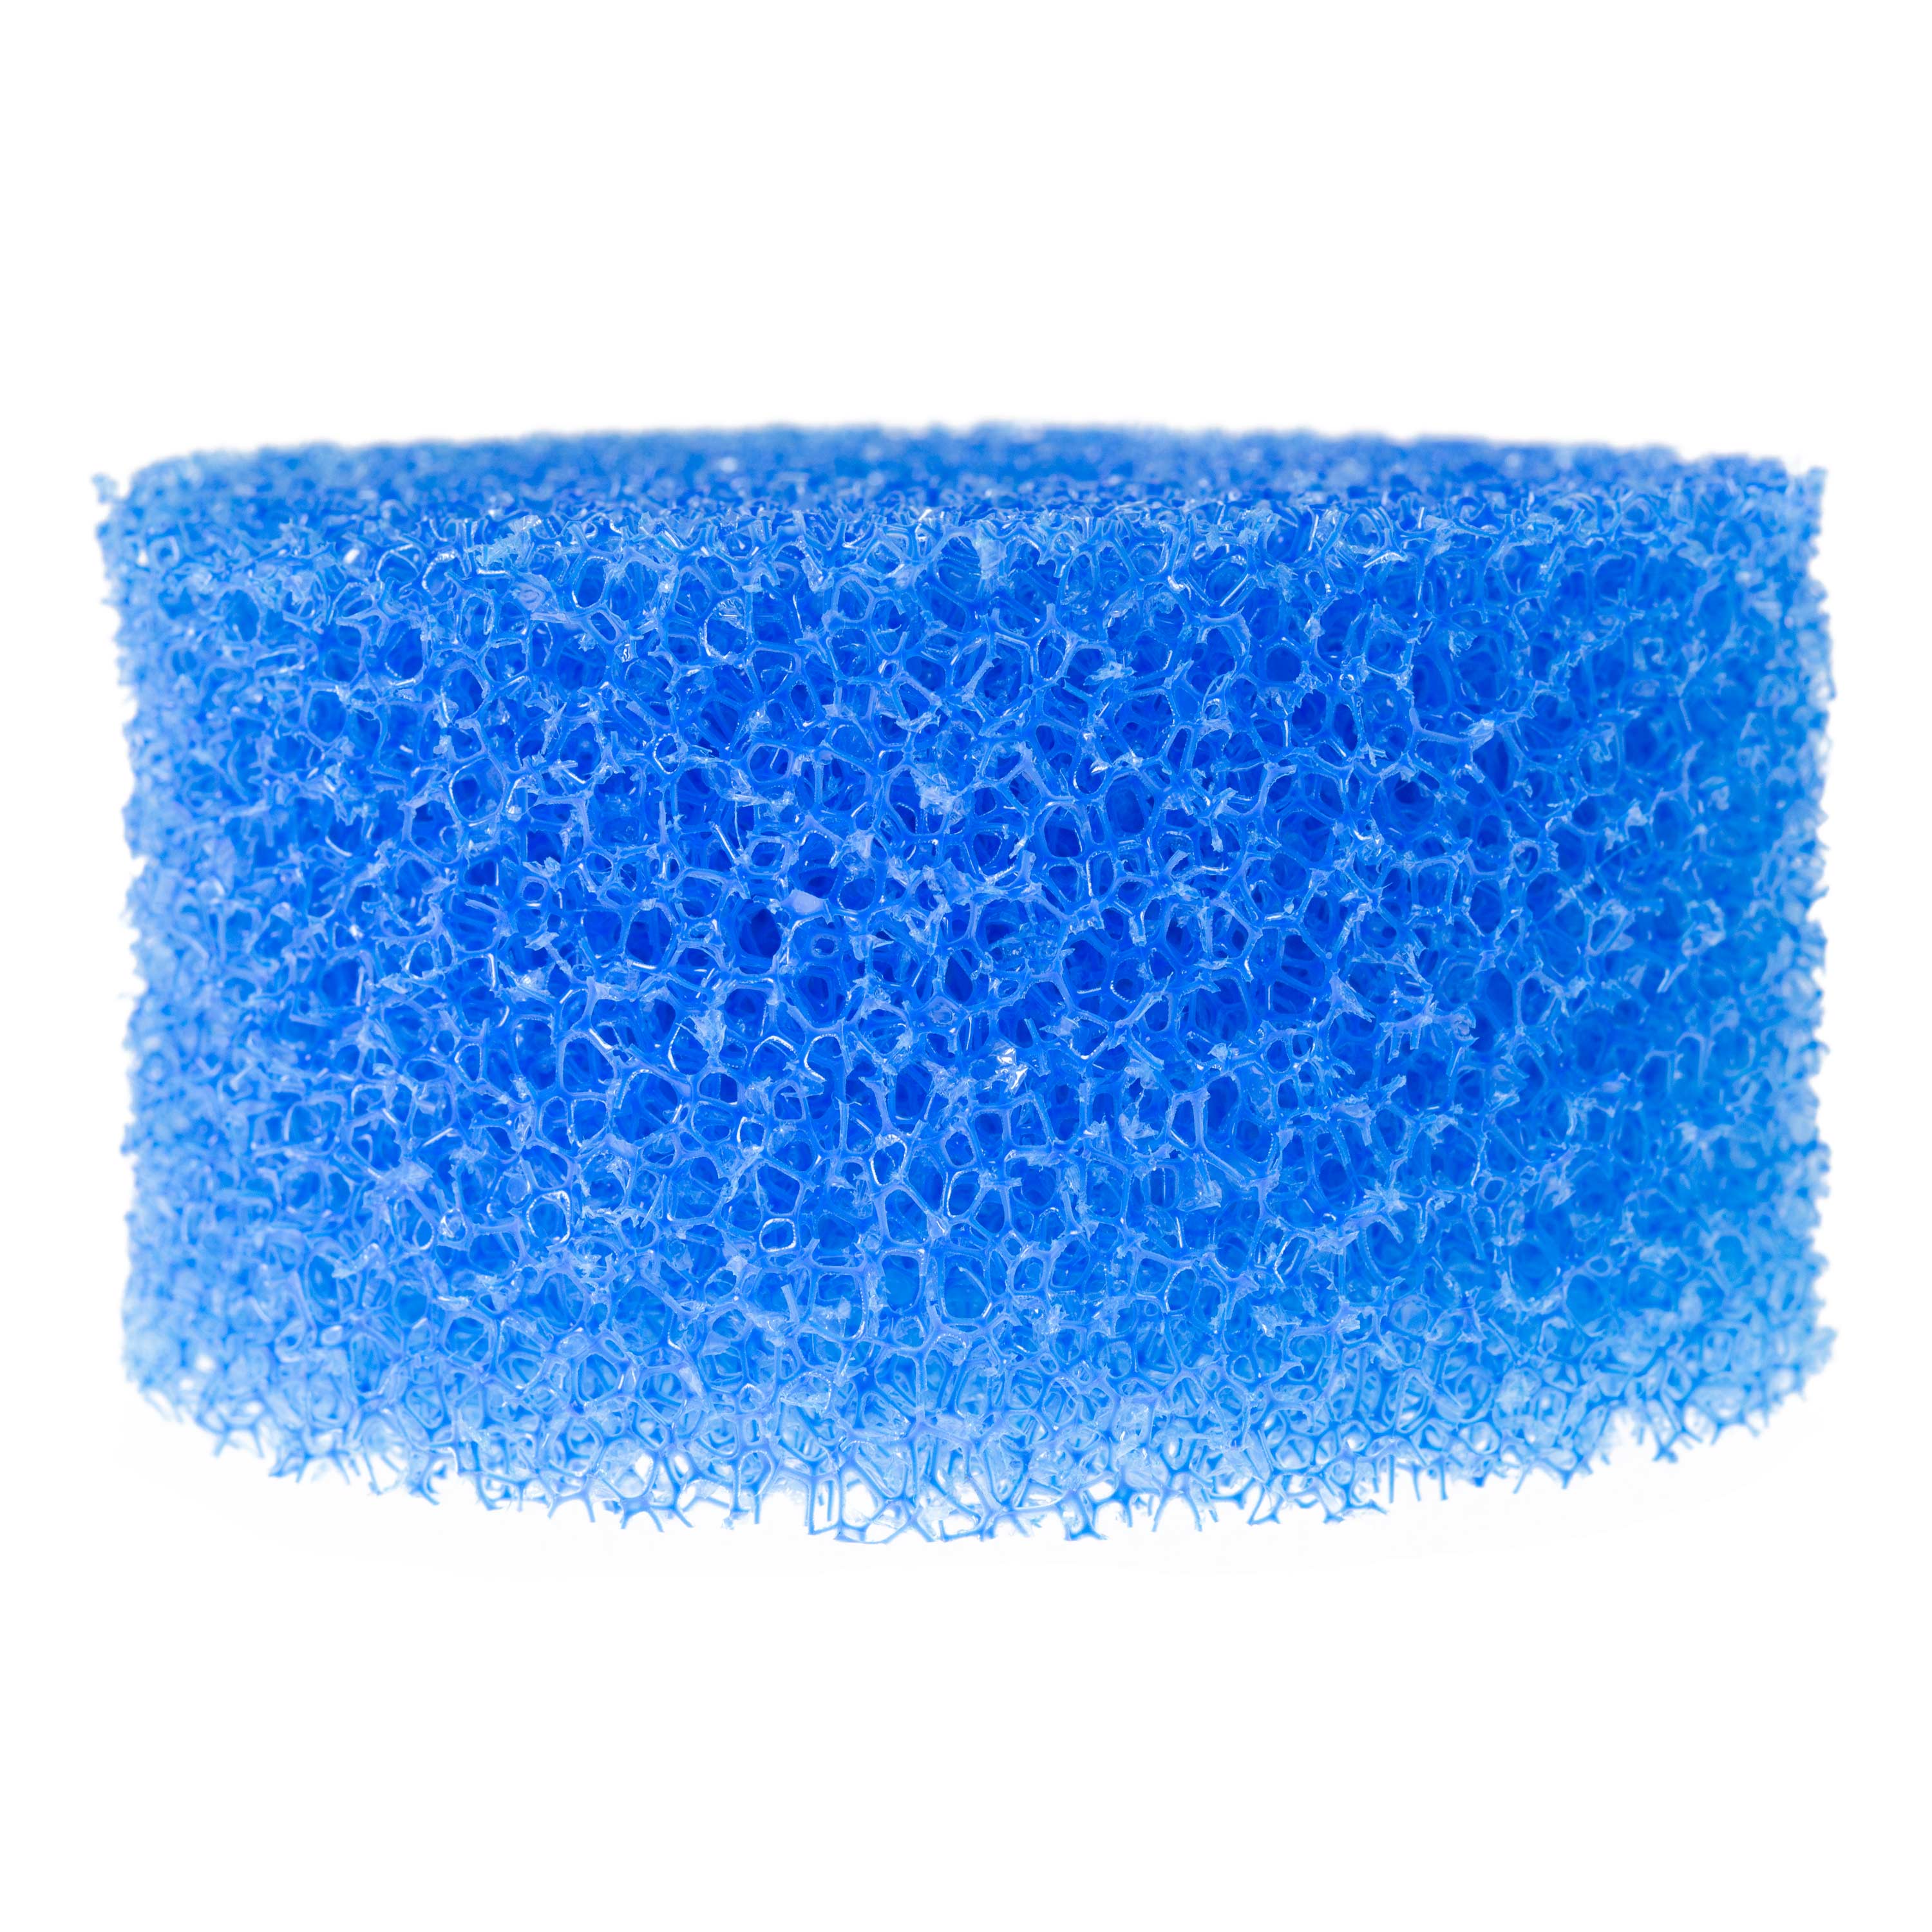 Filterschwamm, rund, blau, 5 cm